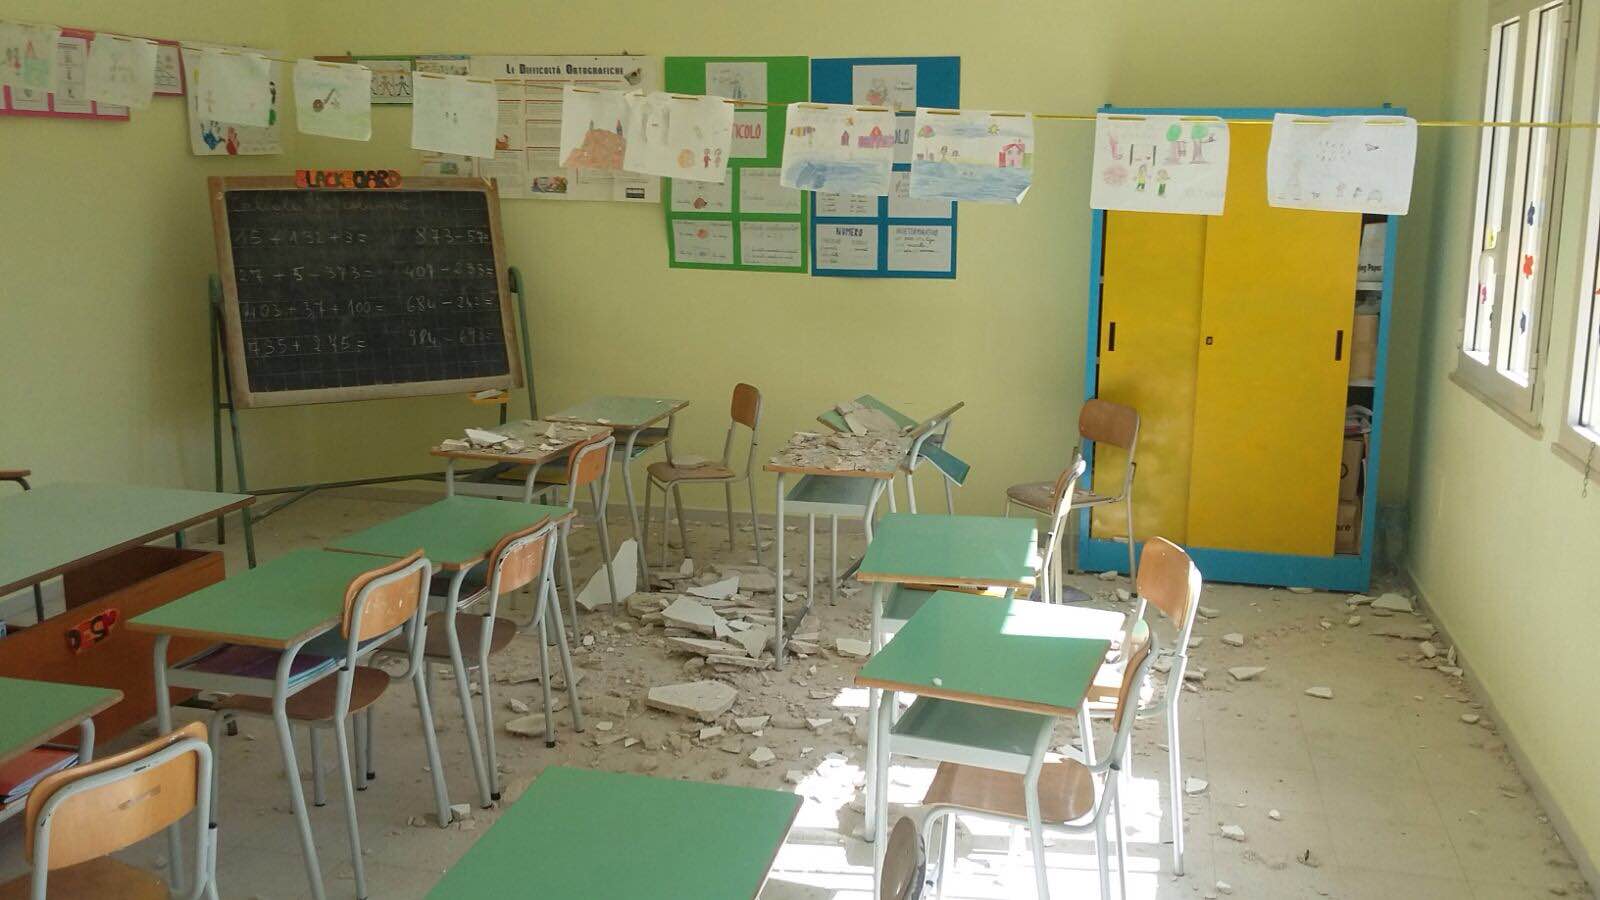 La Cisl di Marsala: "Preoccupanti le condizioni delle scuole" - Tp24